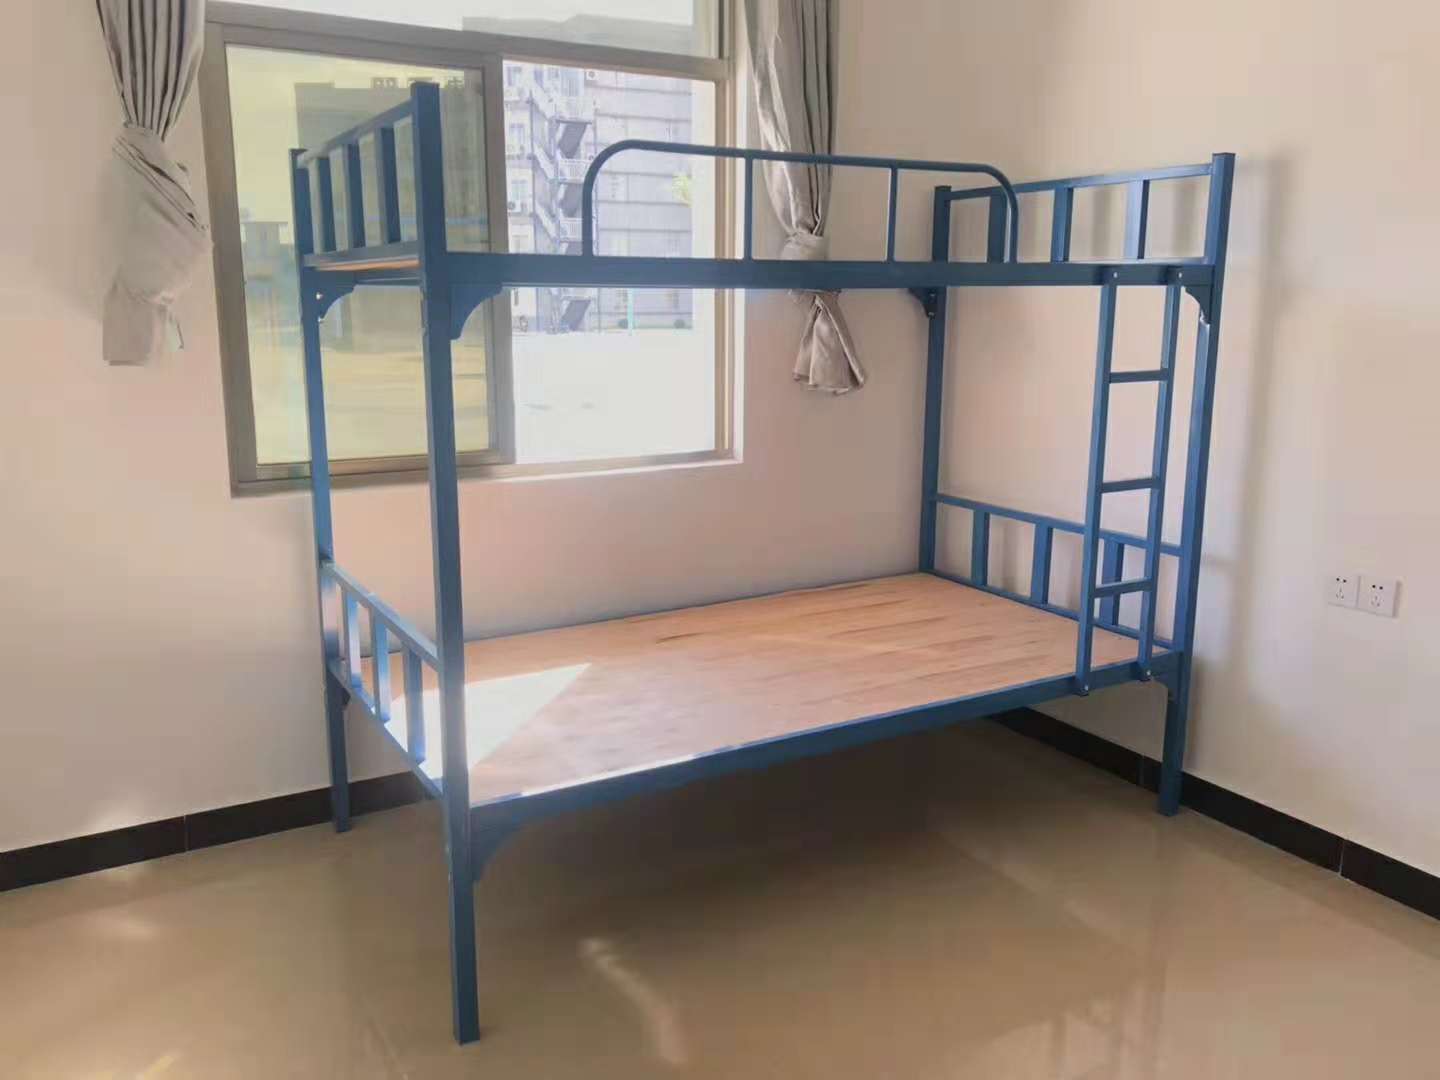 厂家销售上下铺床高低床双层床铁床 白色右爬梯下铺 双层子母床 白色右爬梯下铺图片